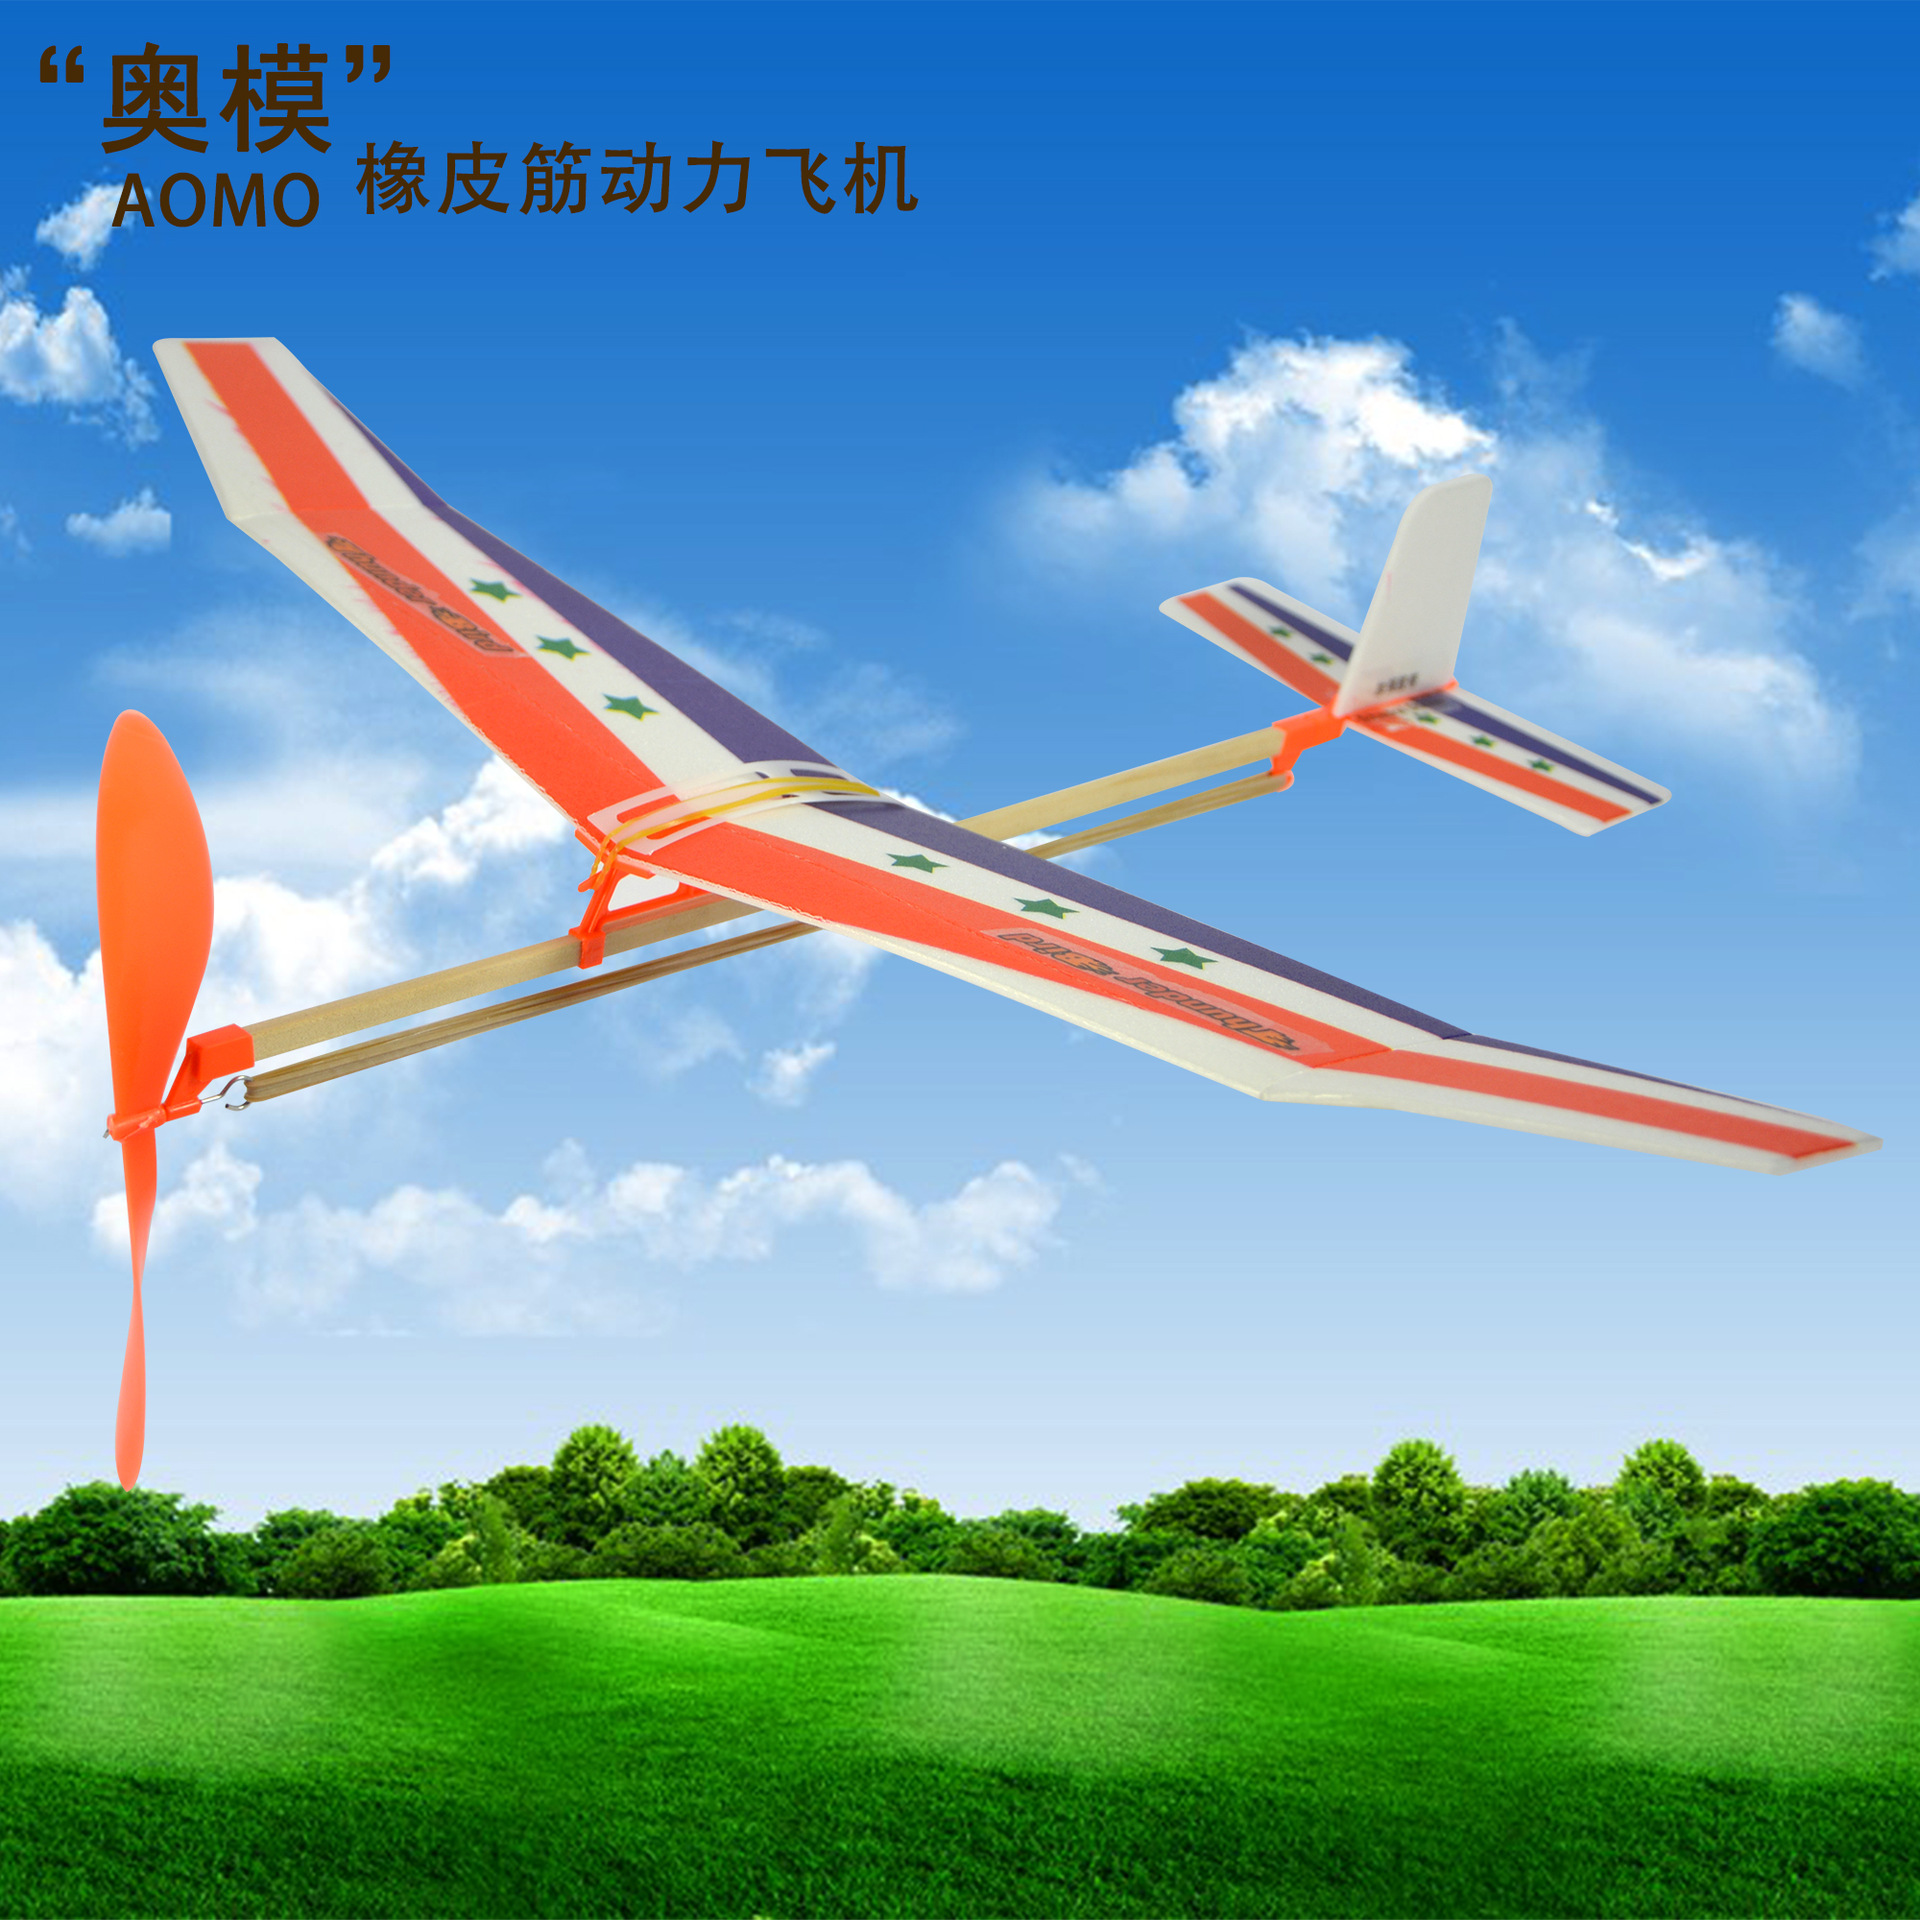 领航者单翼航模橡筋动力飞机航空研学生制作模型纸飞机滑翔机